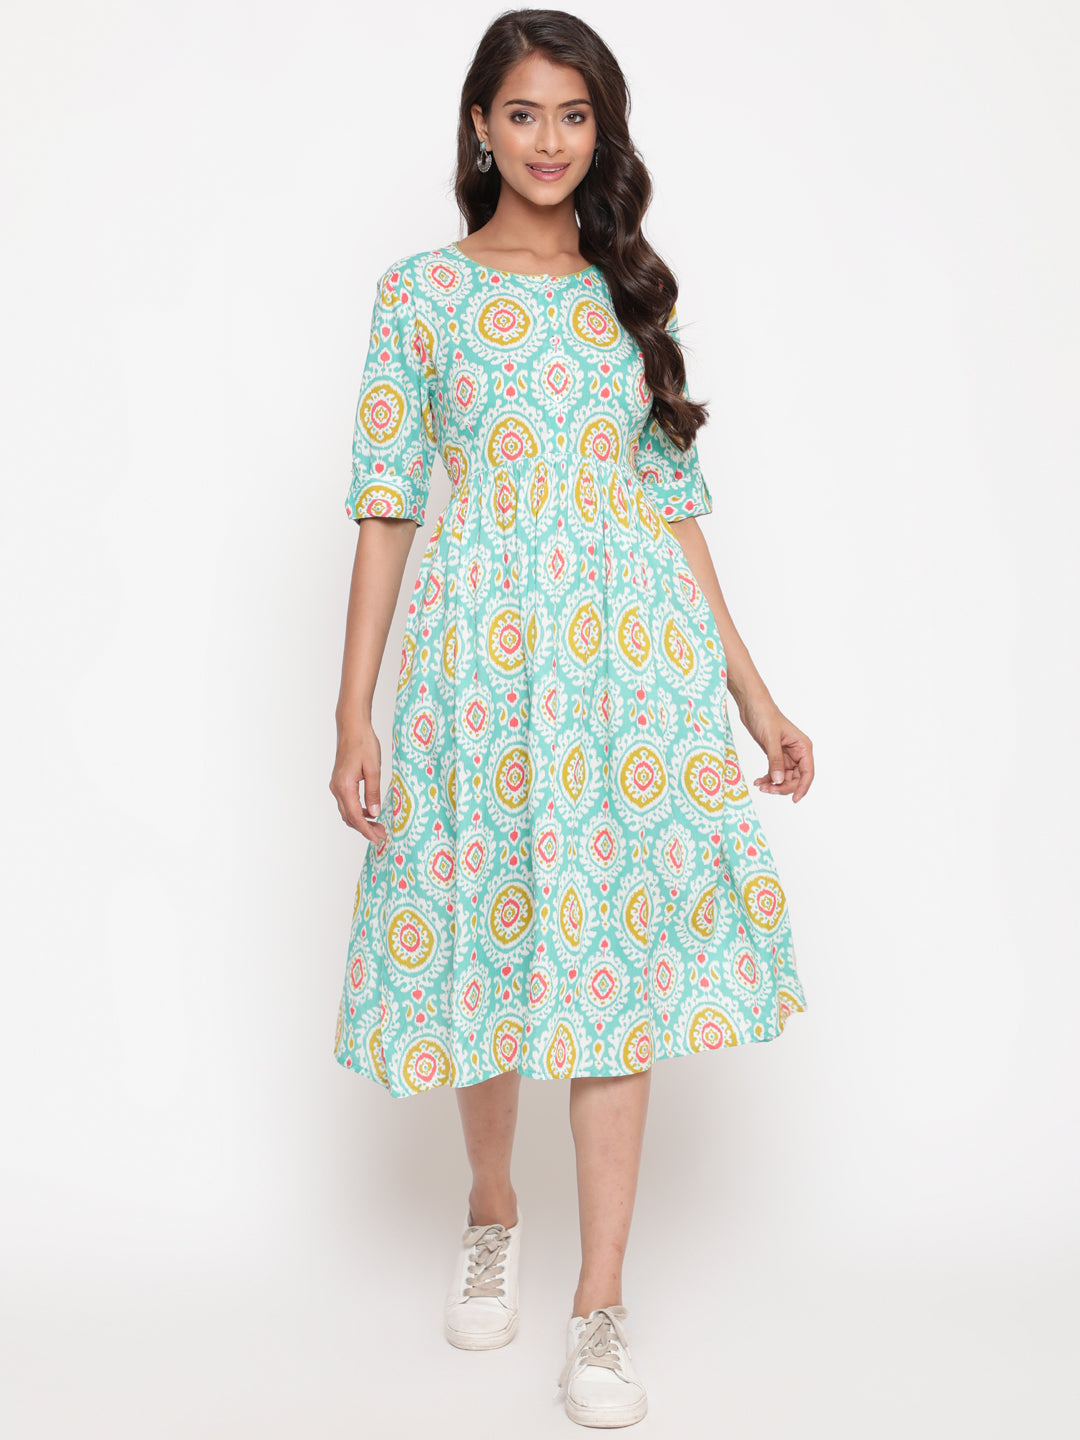 Woman posing in Mint Ikat Printed Knee Length Designer Dress